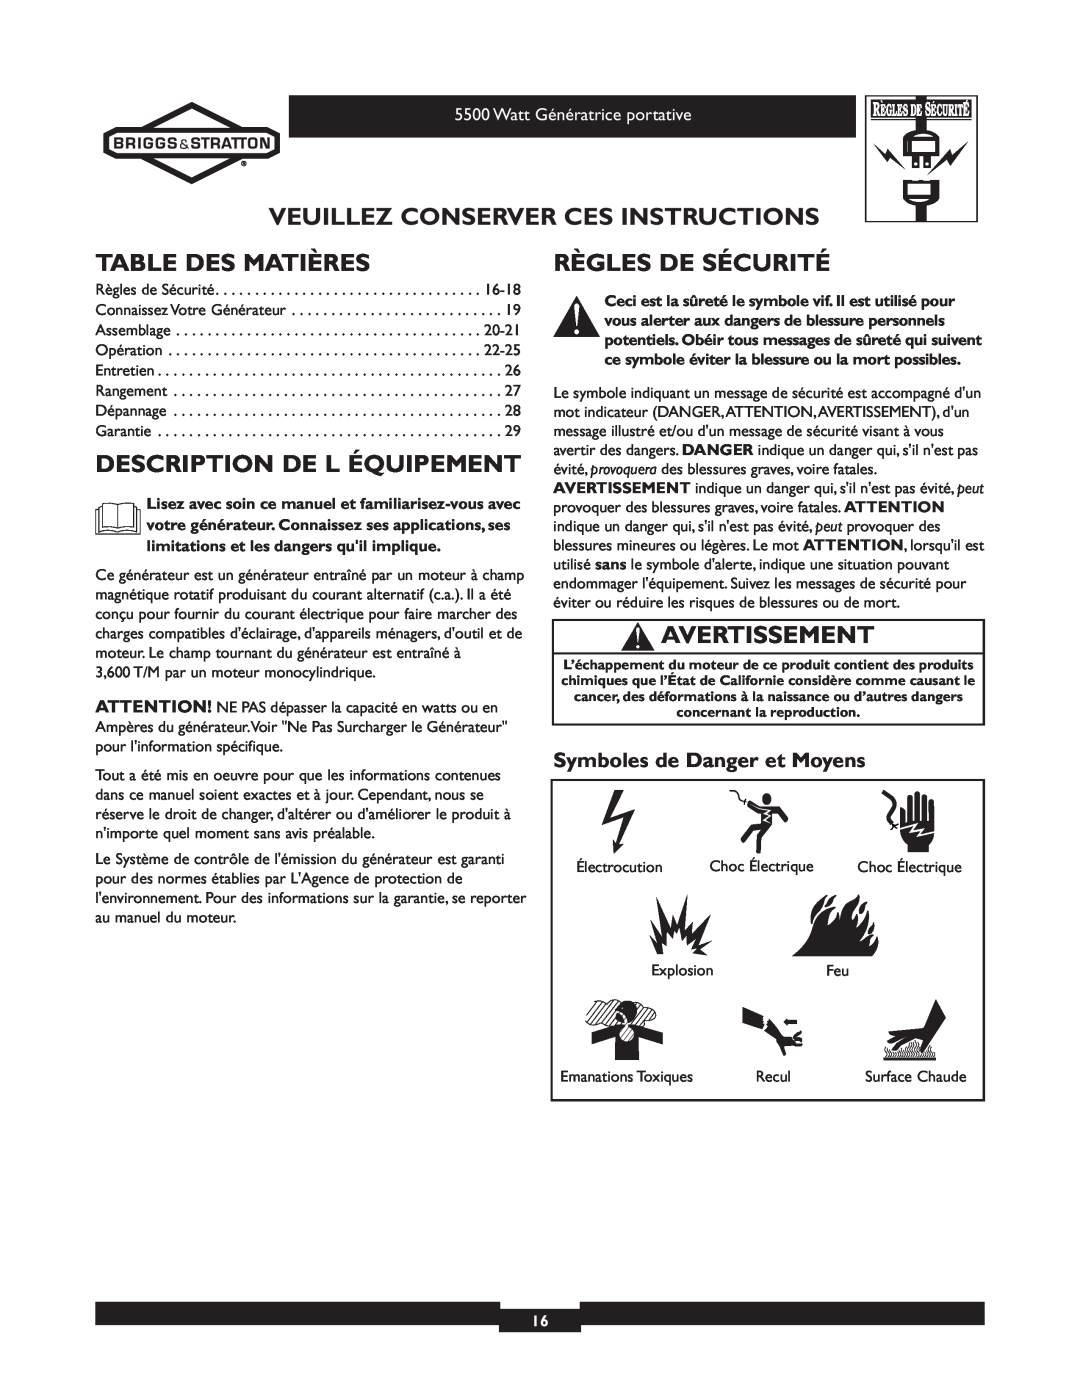 Briggs & Stratton 030206 owner manual Veuillez Conserver Ces Instructions, Table Des Matières, Description De L Équipement 